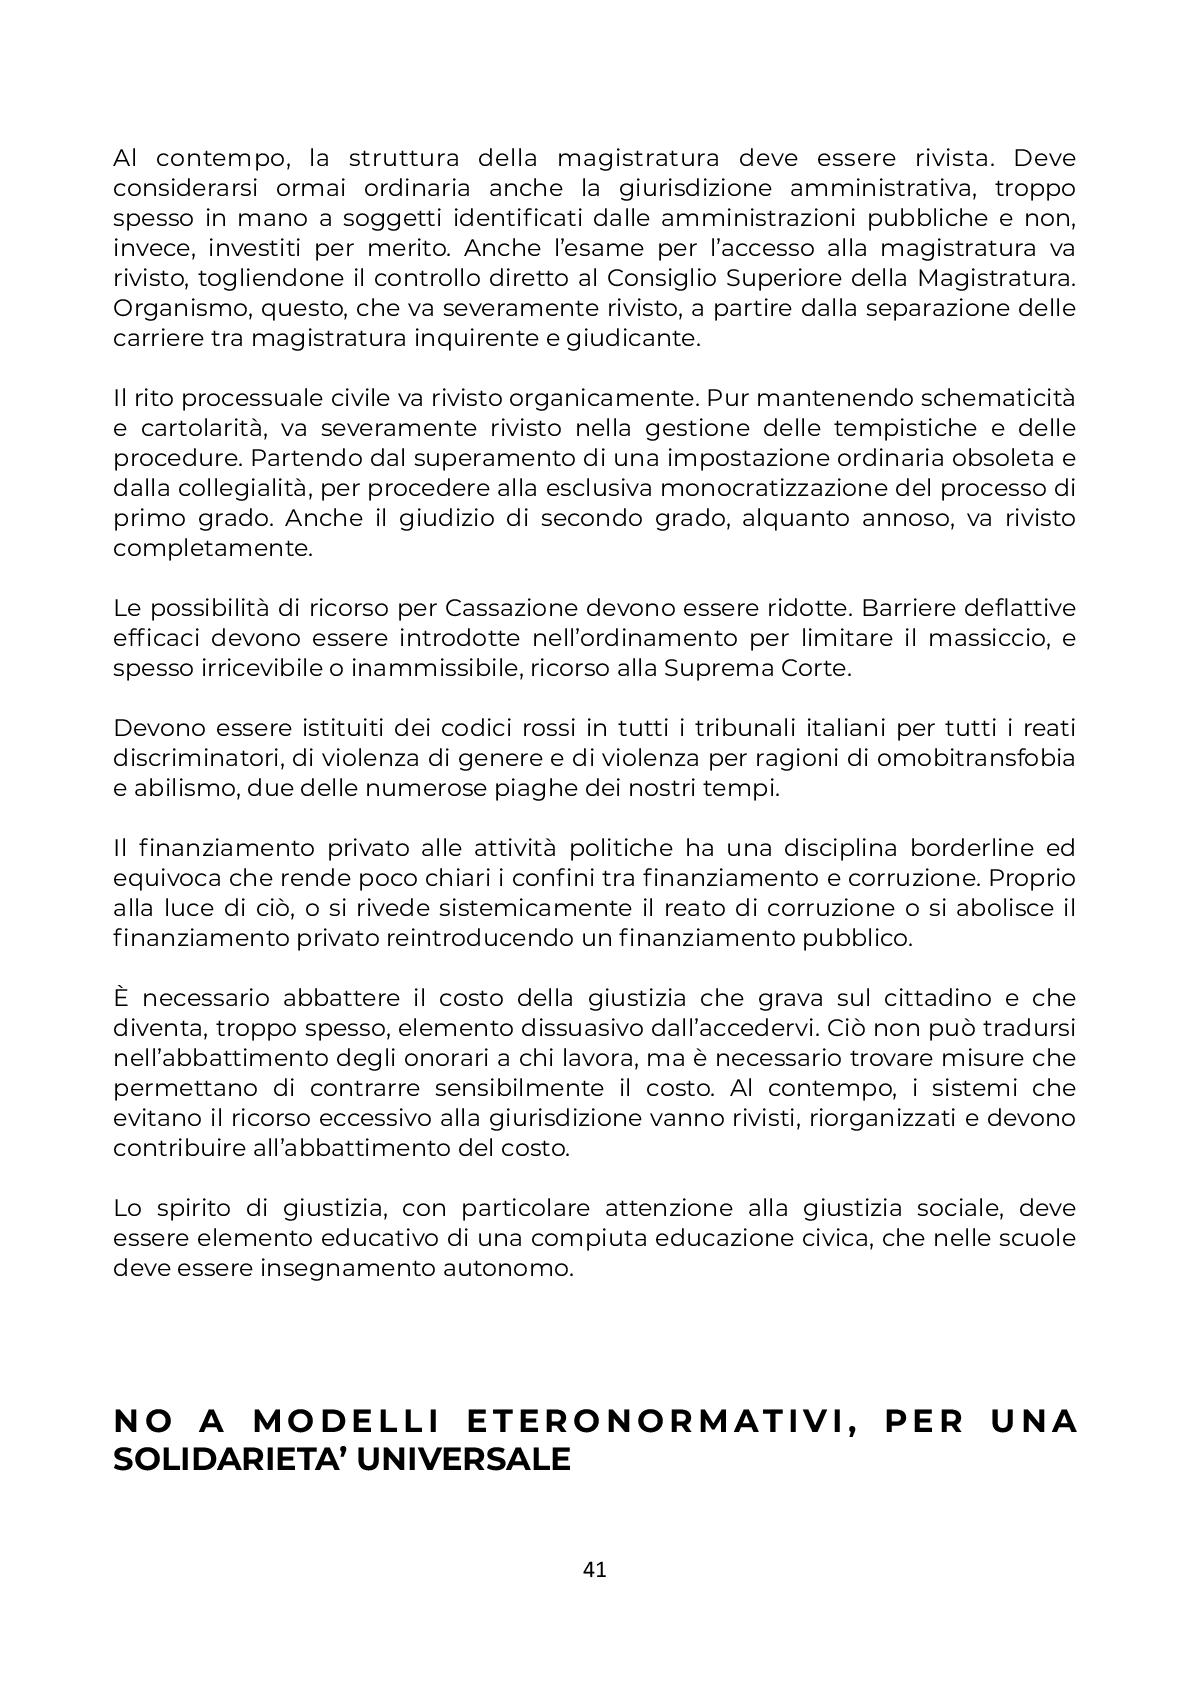 Mozione-_DISTRUZIONE-CREATIVA_Niccolo_Musmeci-041